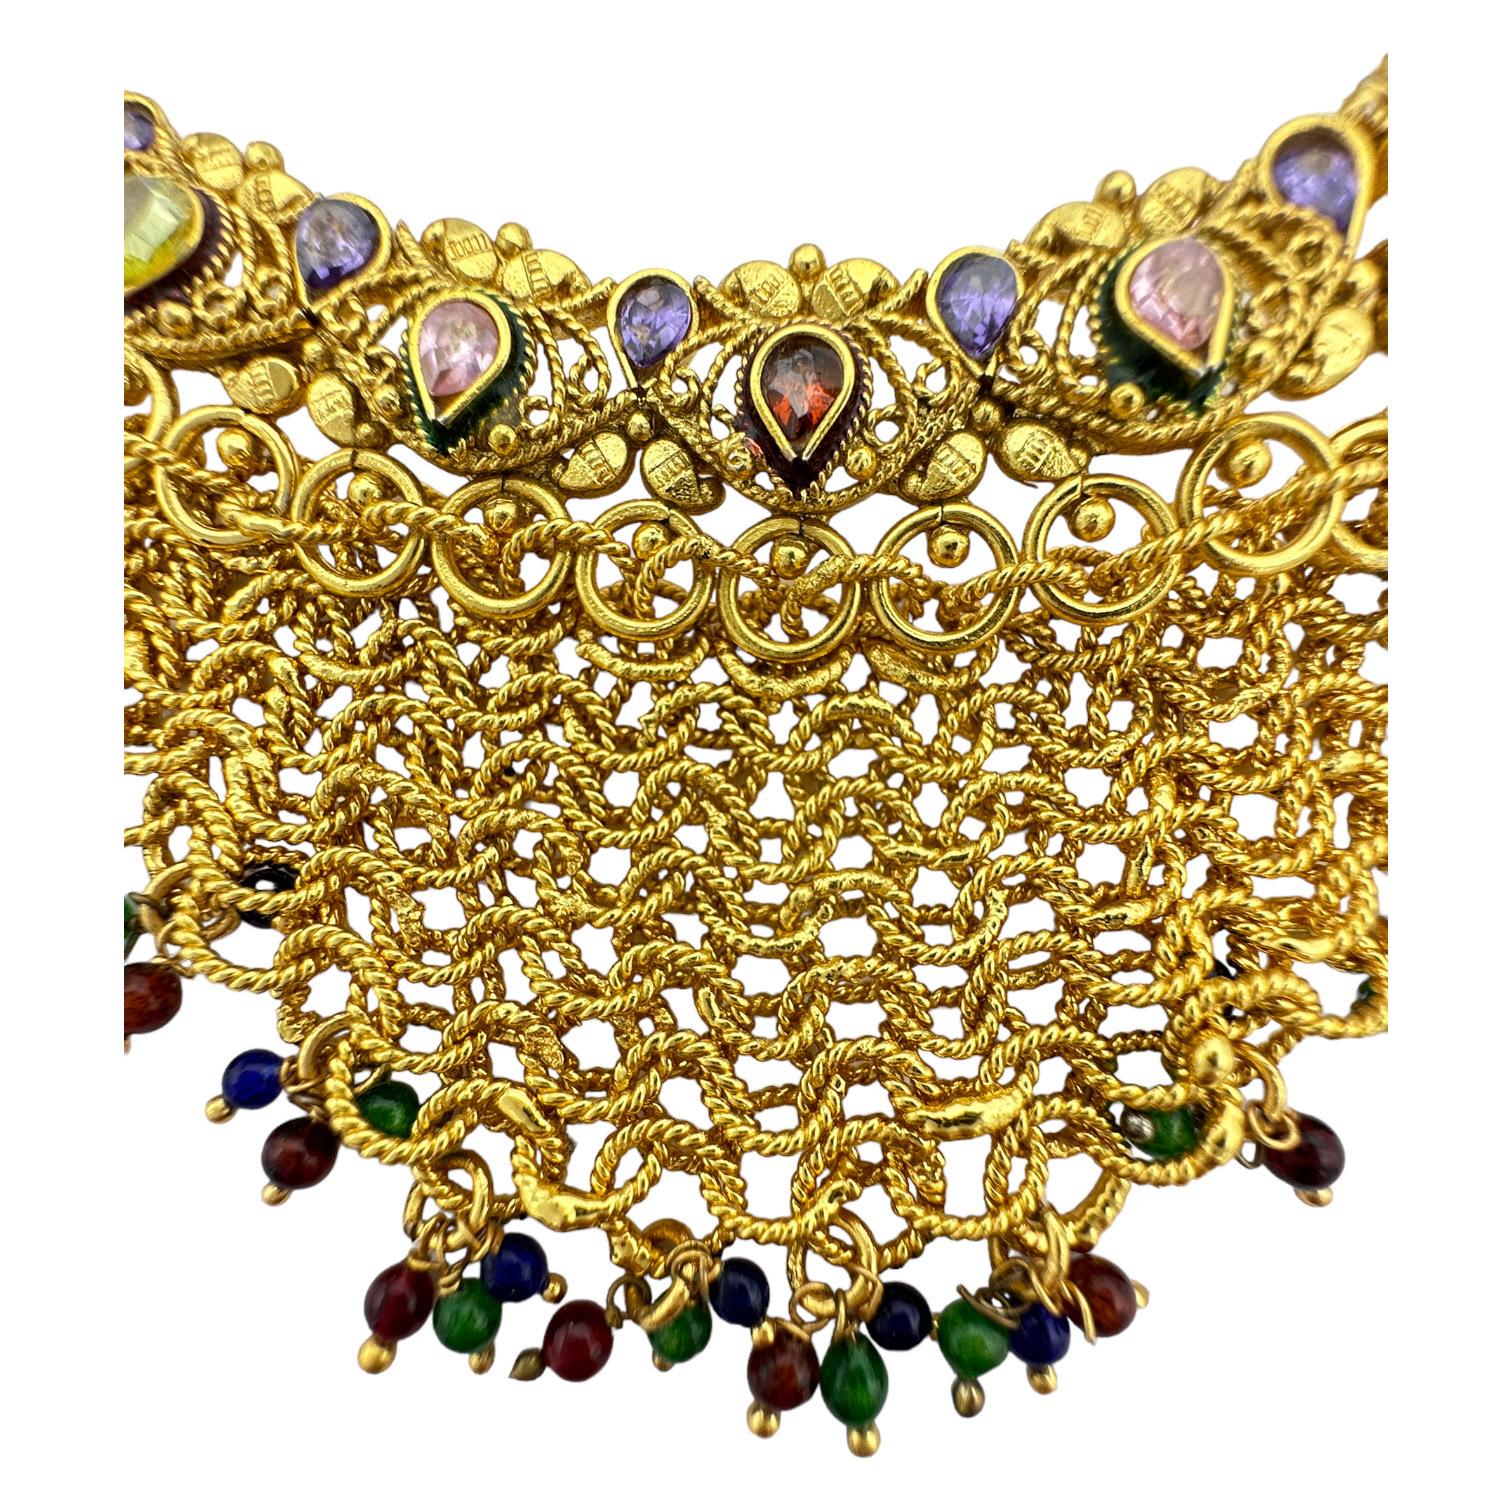  Verleihen Sie Ihrem Look mit der Netz-Halskette einen Hauch von Luxus. Dieses verschnörkelte Halsband zeichnet sich durch ein exquisites, handgefertigtes Design aus, das durch die Verwendung von Farbe zu einem wahrhaft einzigartigen Stück wird.